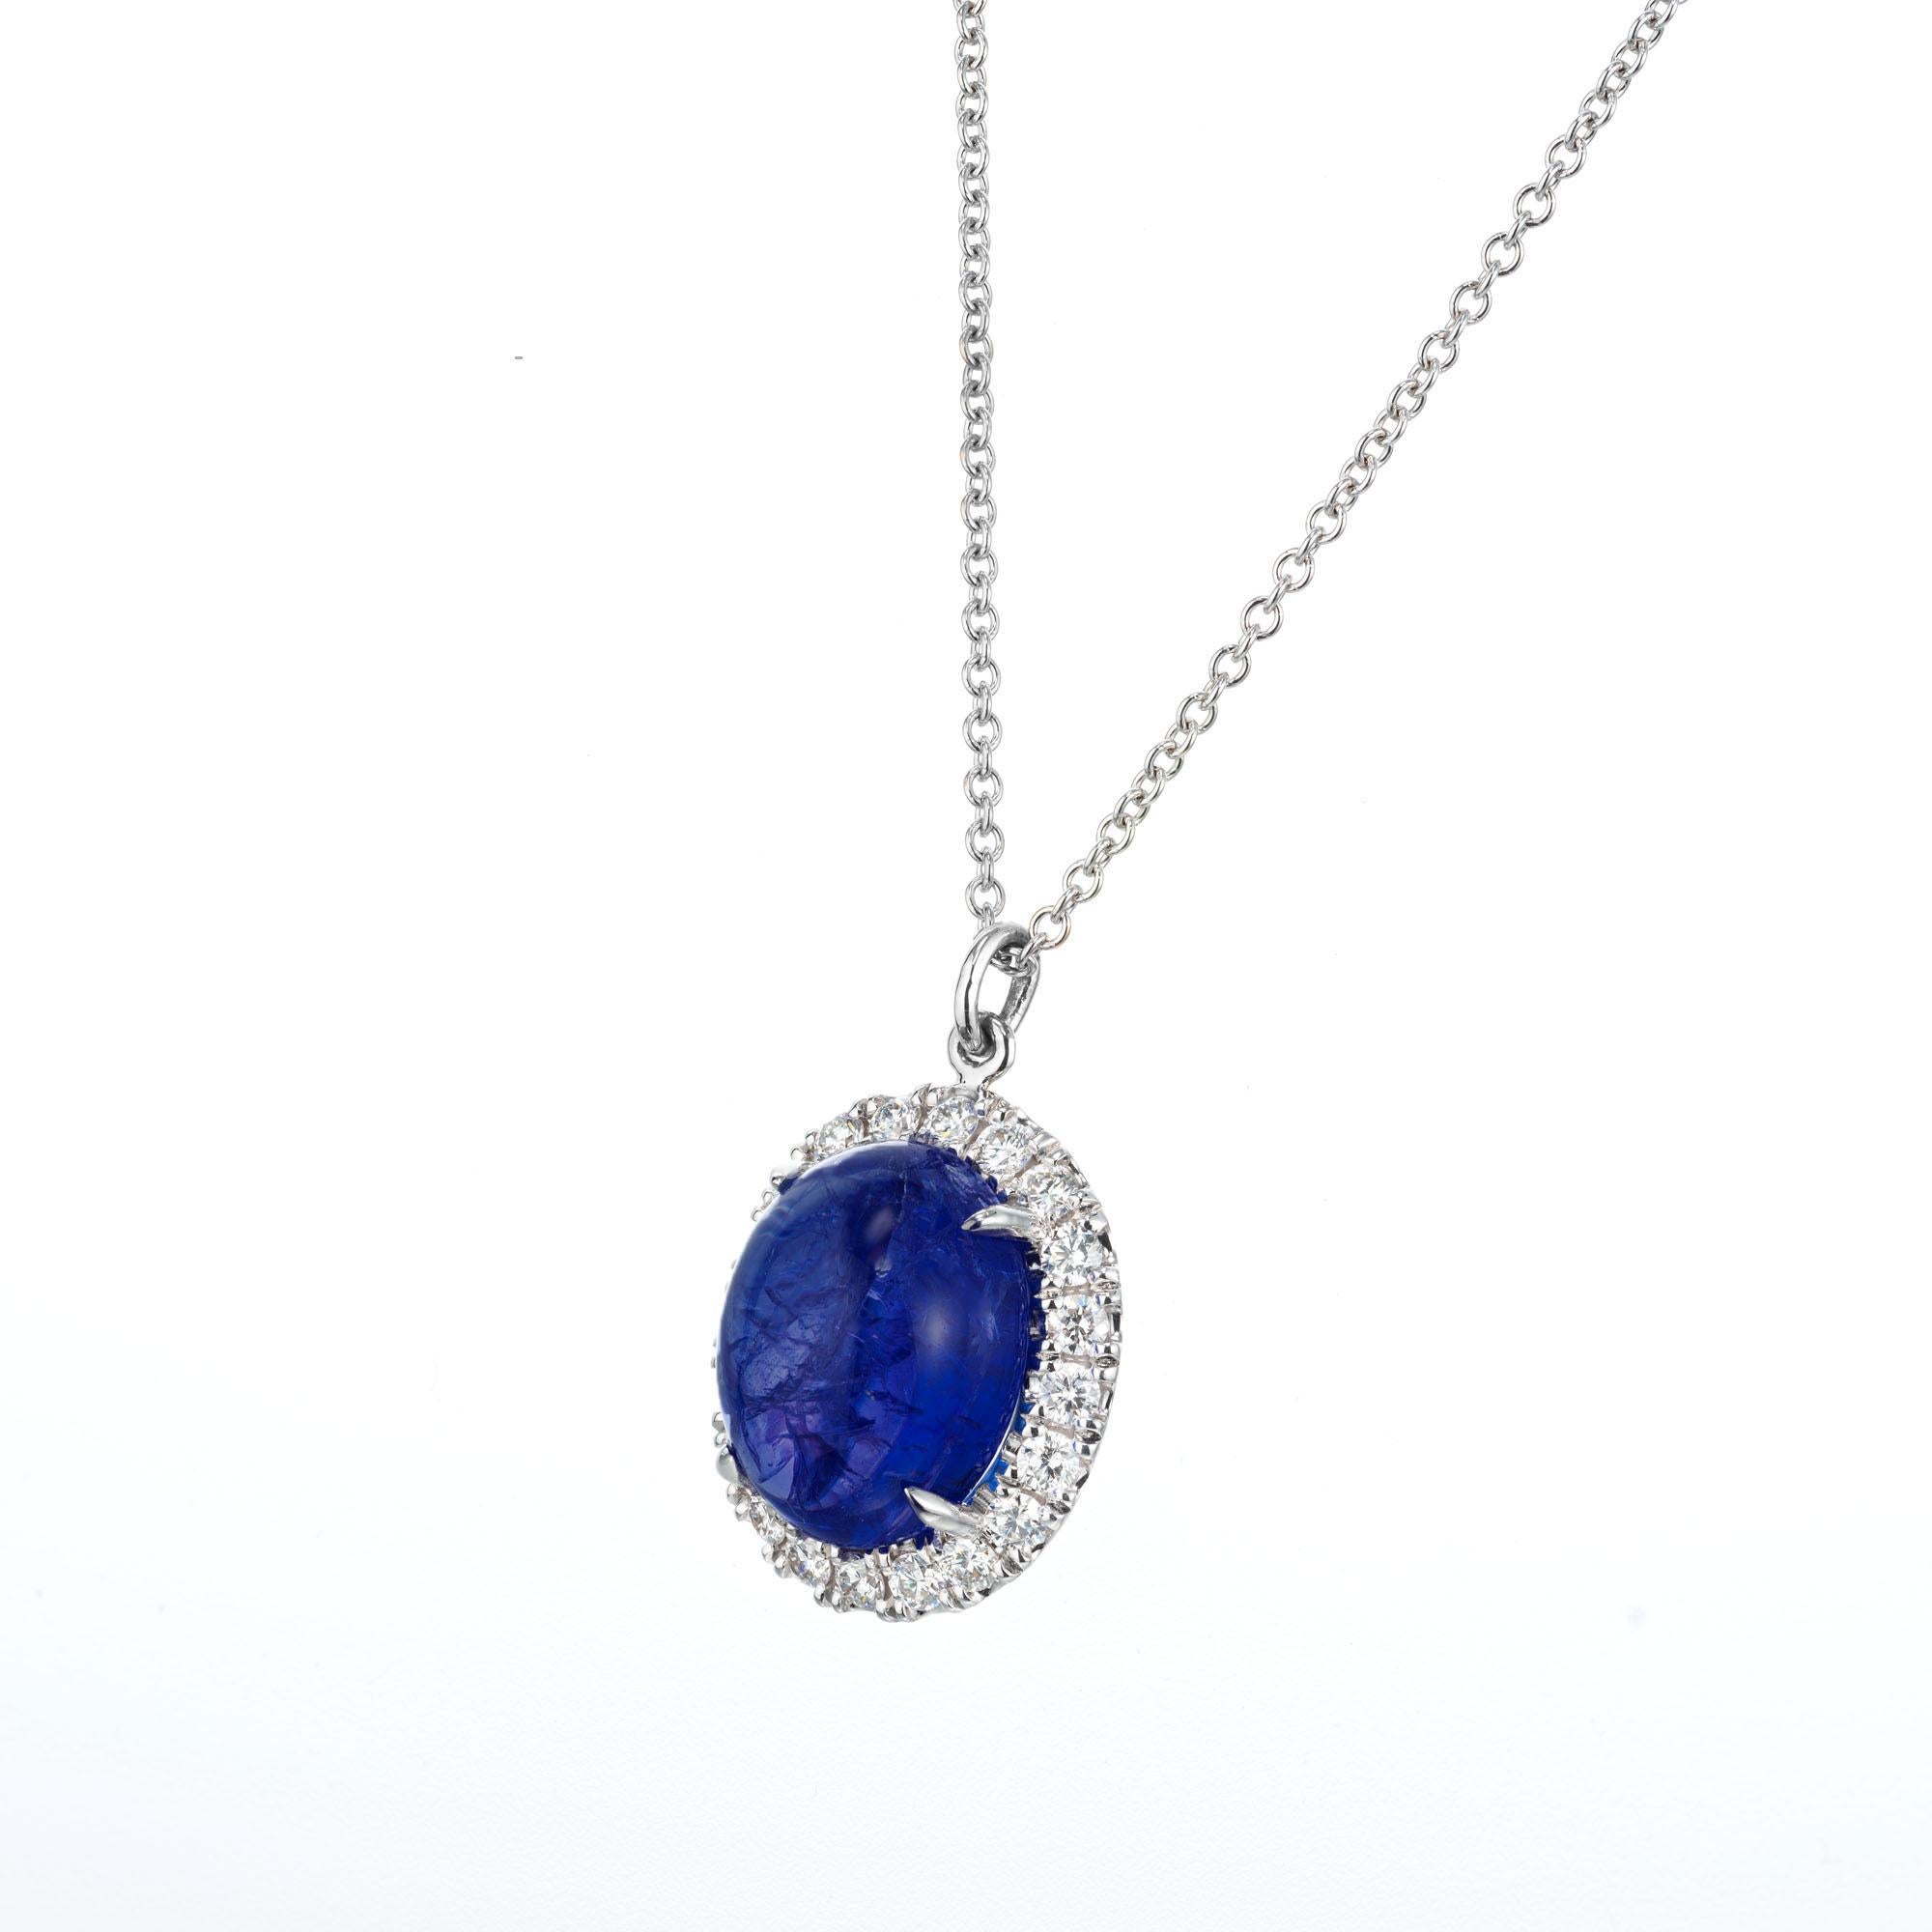 Tanzanite bleue ovale de 7,00 carats avec un halo de diamants ronds de taille brillant sertis en or blanc 18k sur une chaîne de 18 pouces de long. Créée et fabriquée dans l'atelier de Peter Suchy. 

1 tanzanite bleue ovale cabochon, I approx.